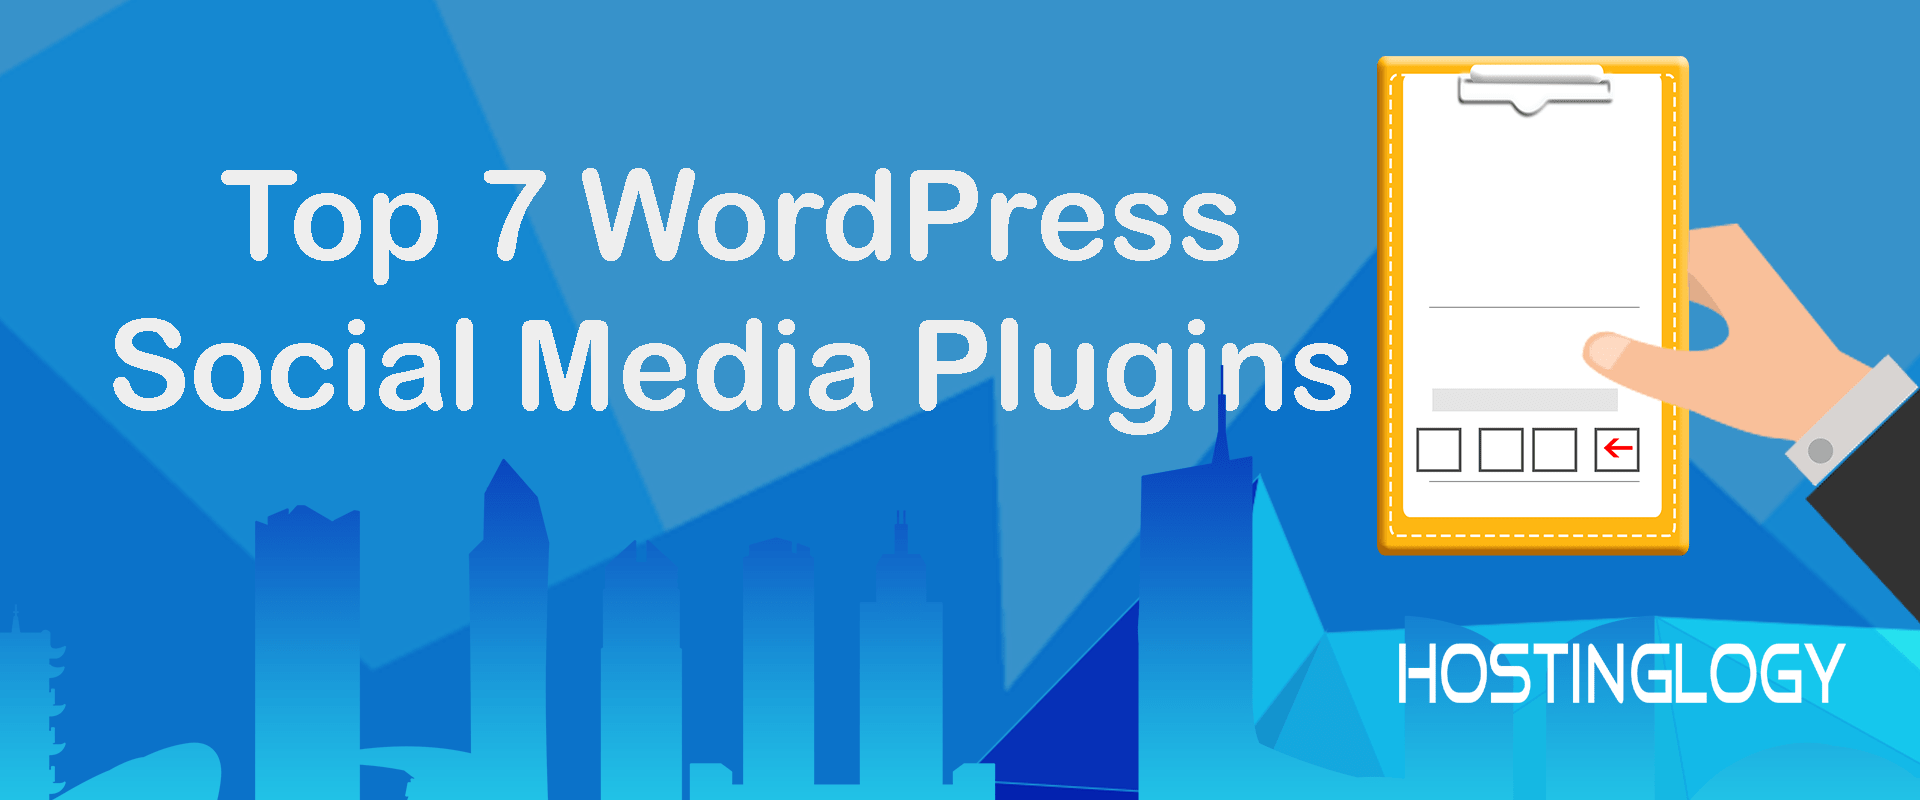 Top 7 WordPress Social Media Plugins